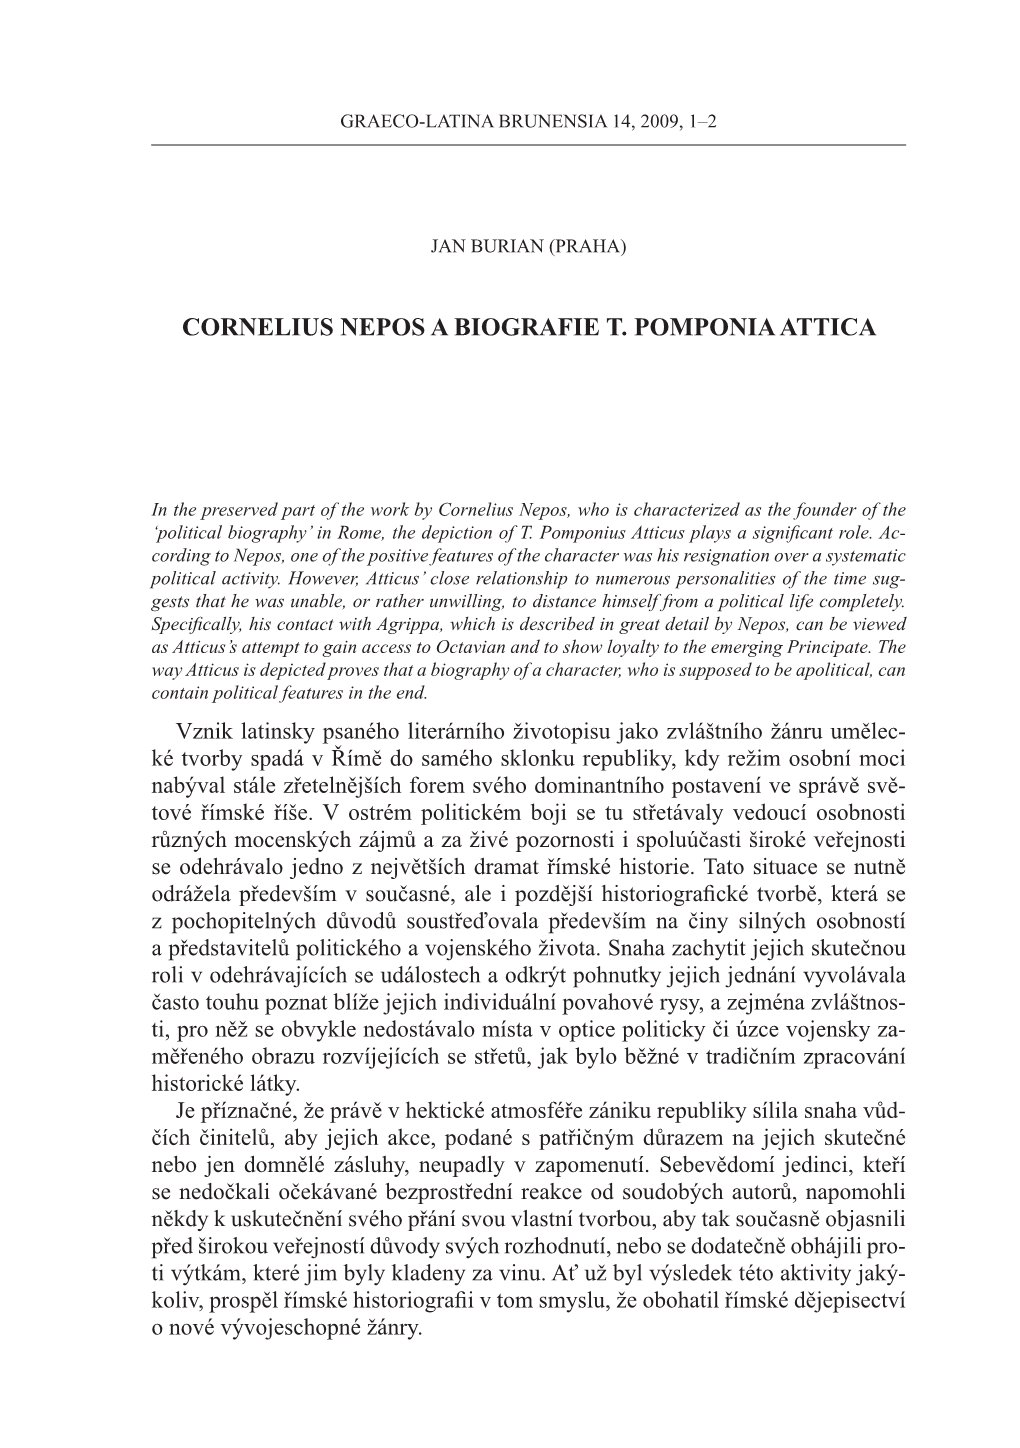 Cornelius Nepos a Biografie T. Pomponia Attica